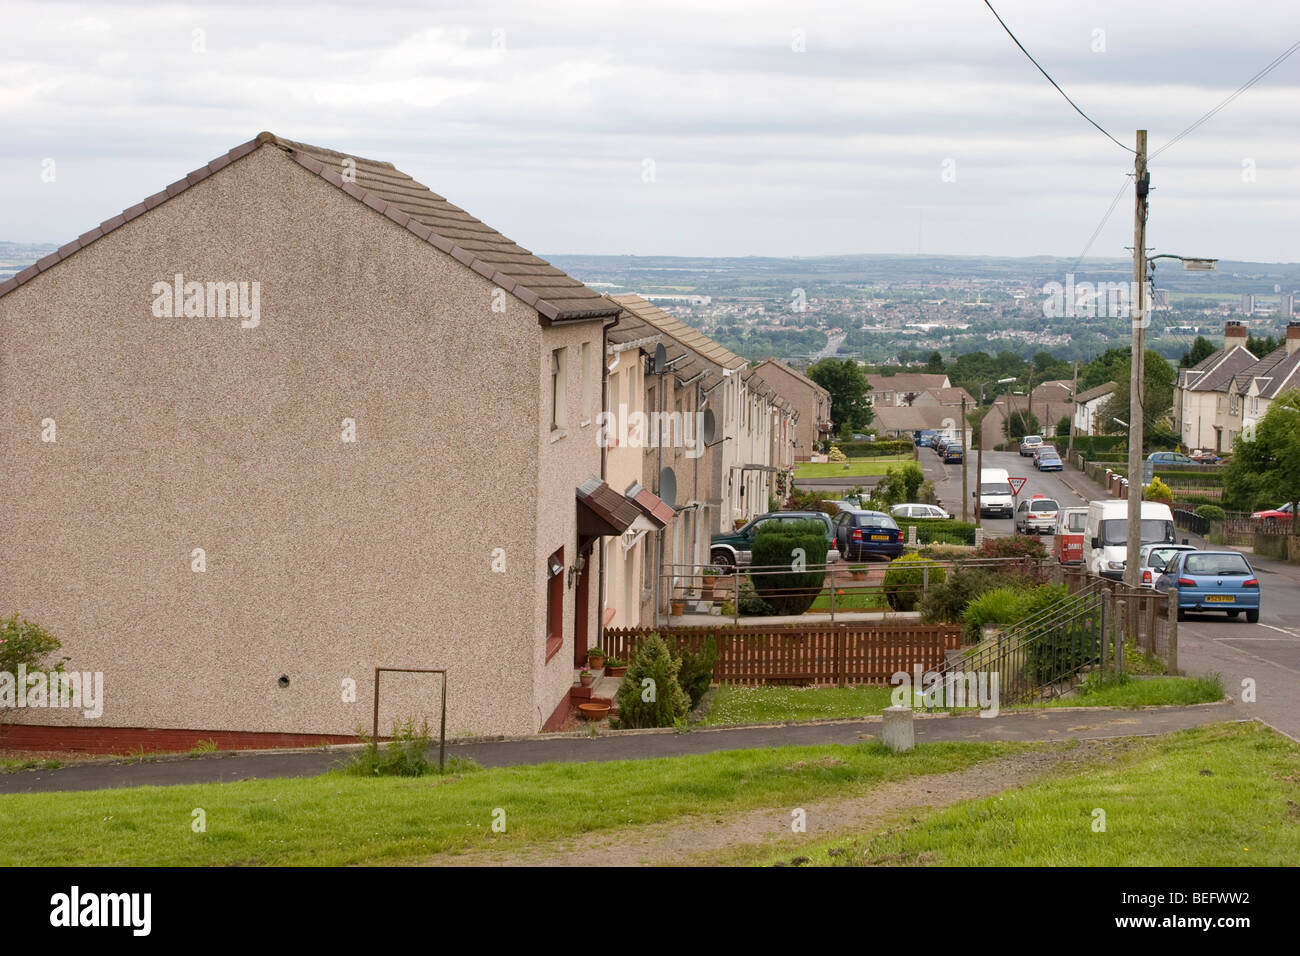 View of Meikle Earnock, Hamilton, Scotland, UK Stock Photo